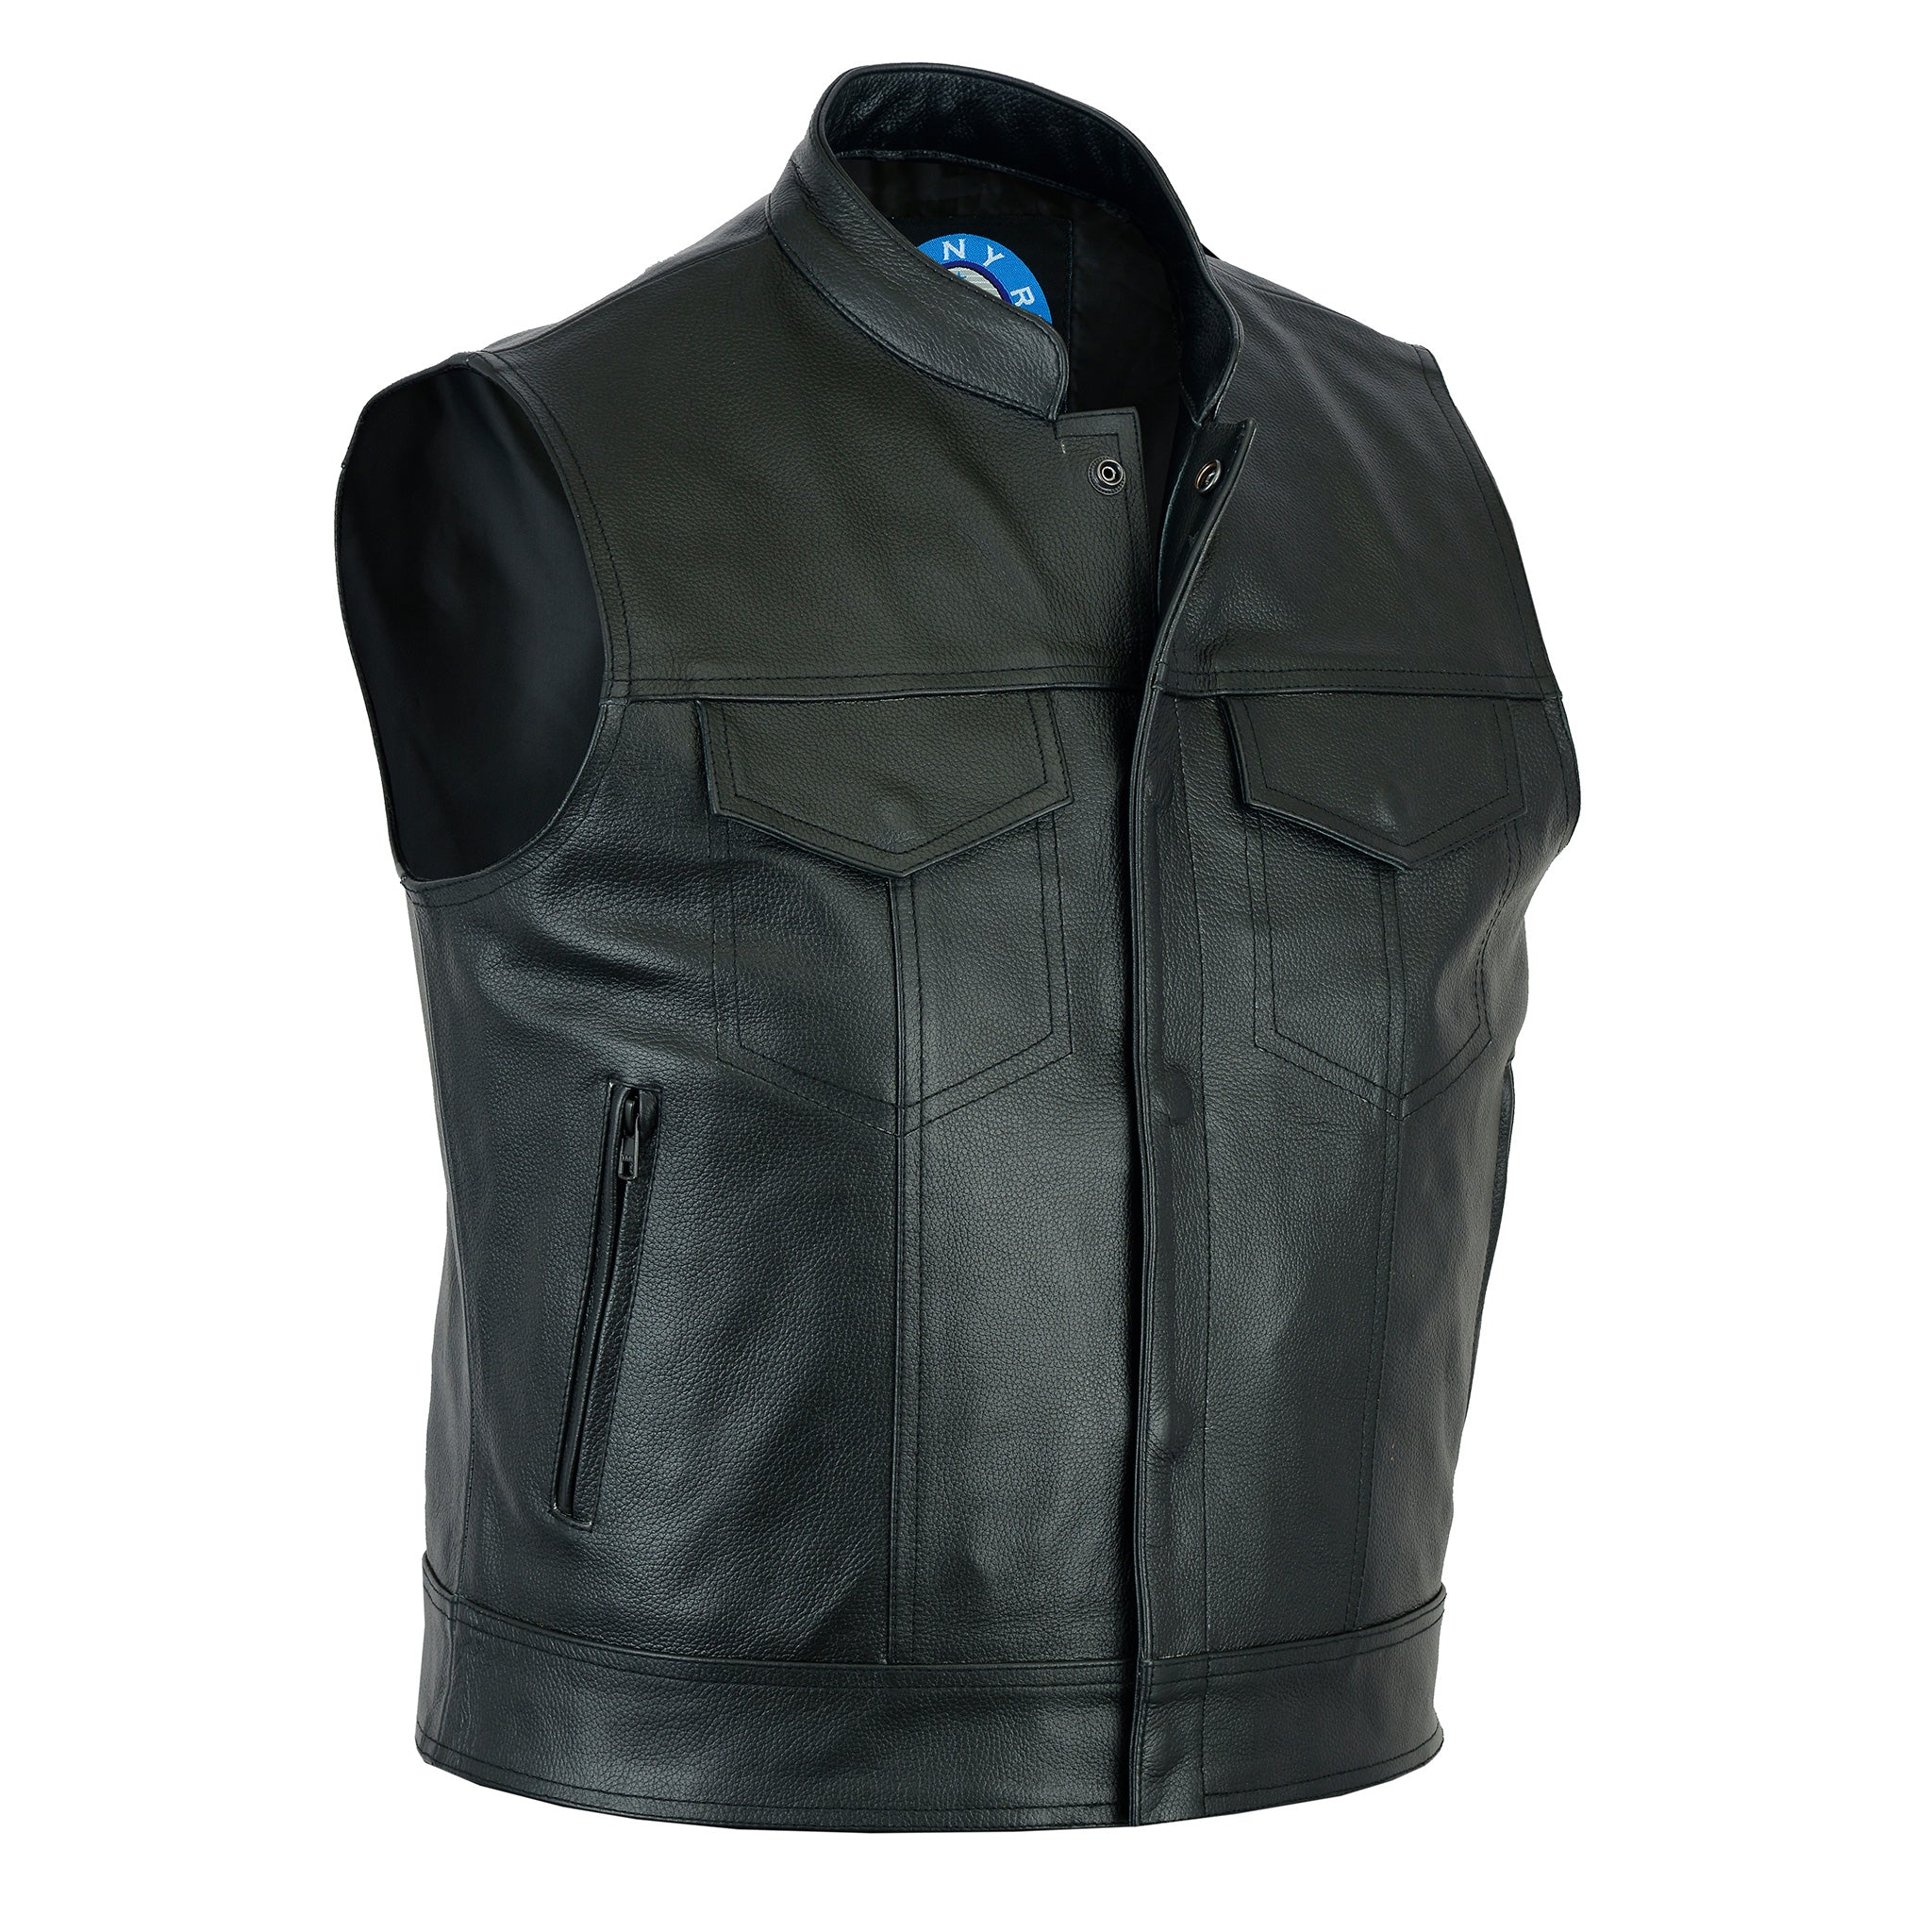 Men's Pacific Leather Vest